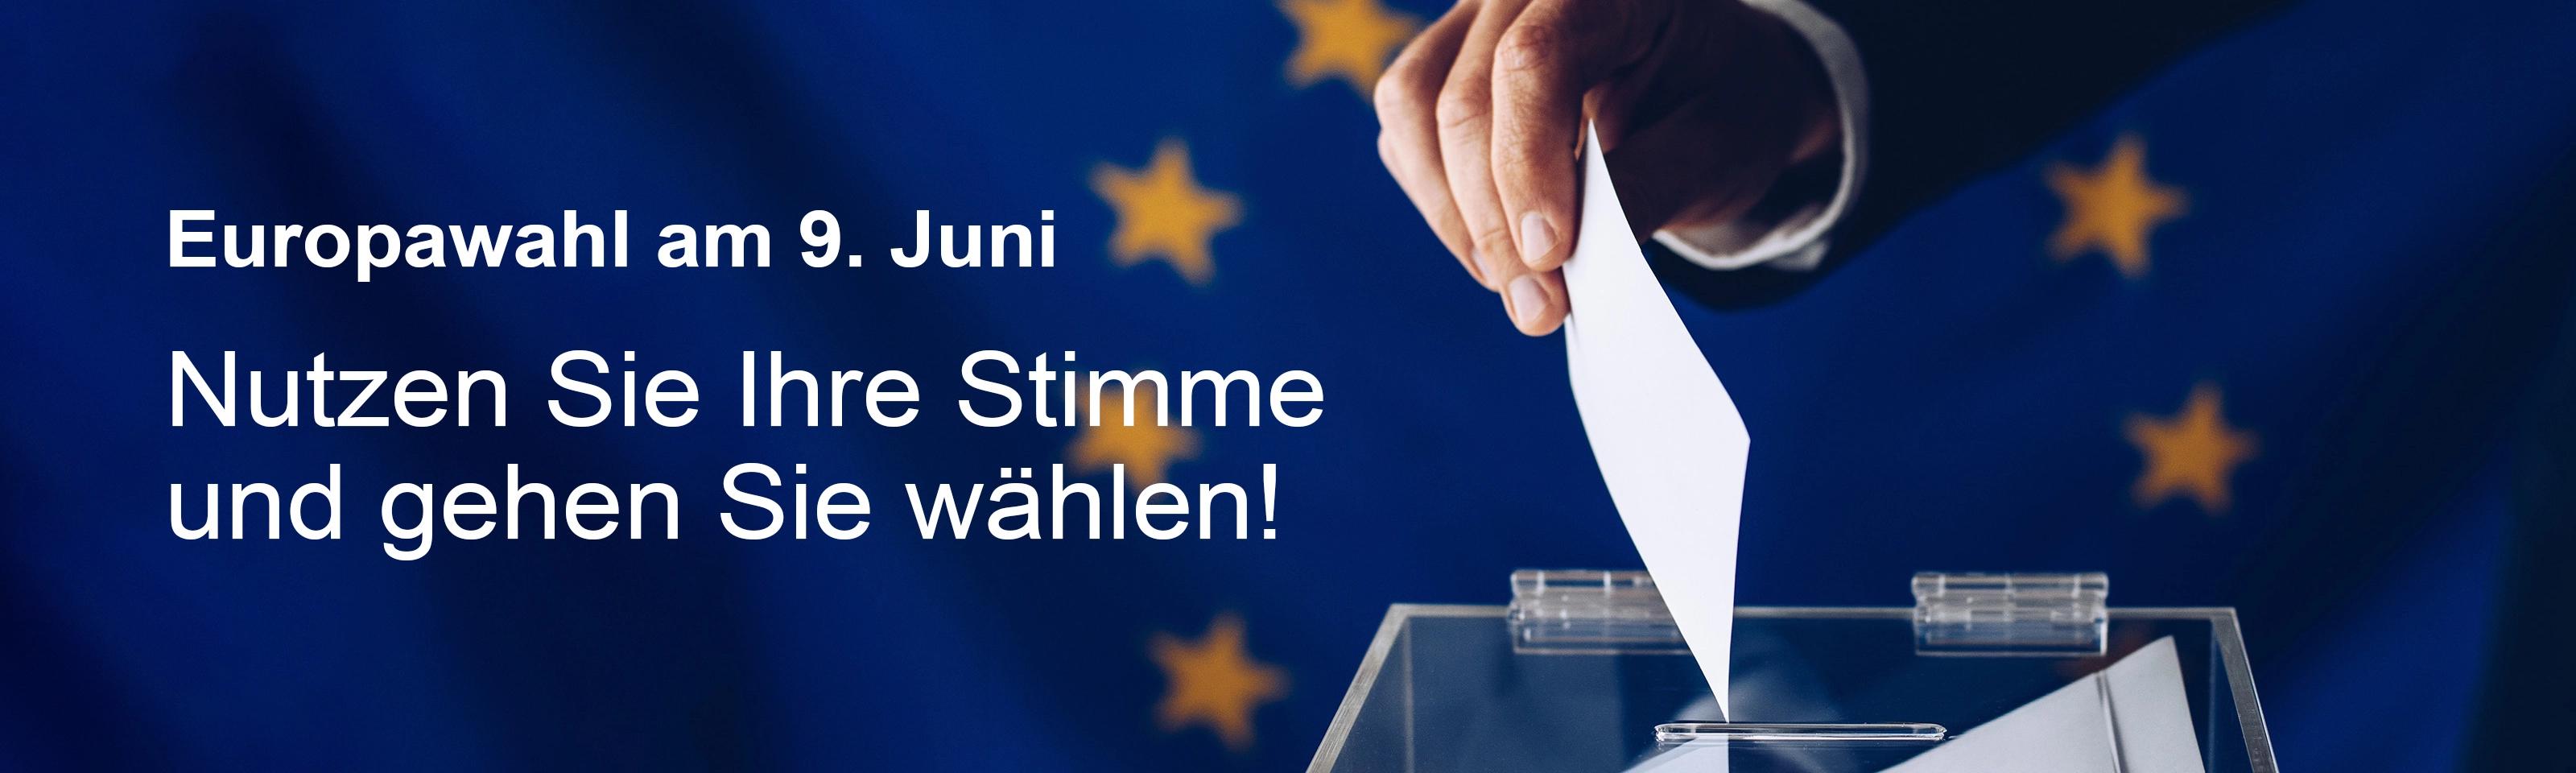 Europawahl am 9. Juni: Nutzen Sie Ihre Stimme und gehen Sie wählen!